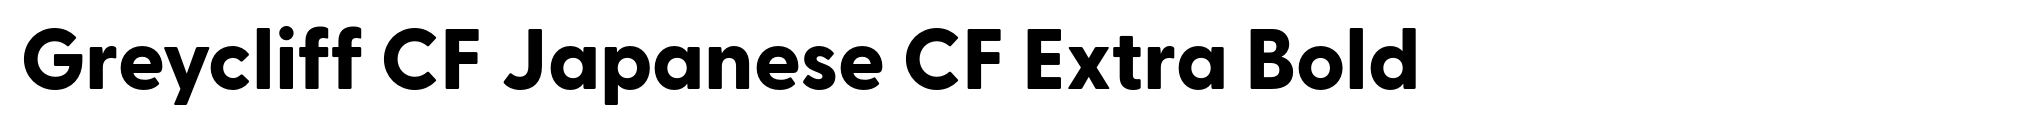 Greycliff CF Japanese CF Extra Bold image